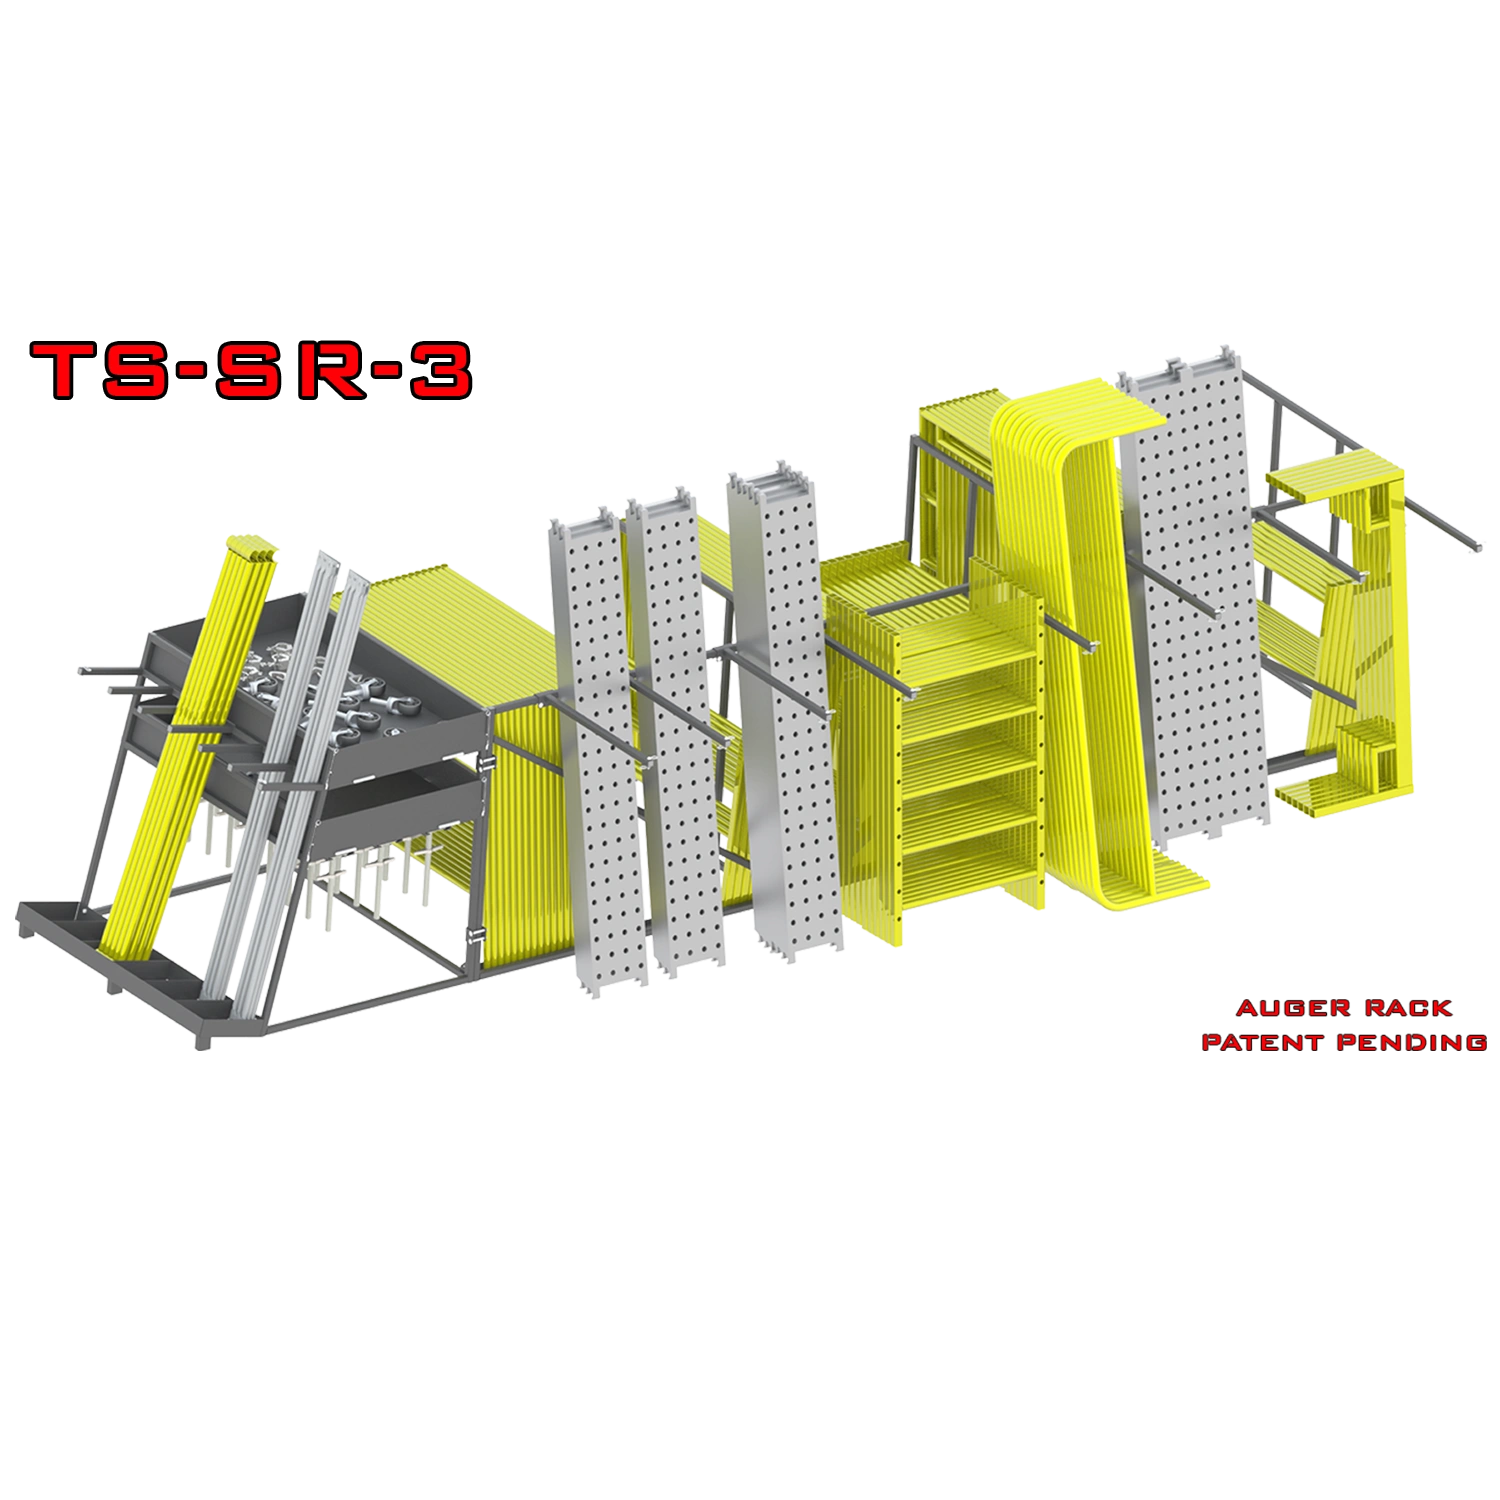 TS-SR-3 Bil-Jax Scaffolding Storage Rack